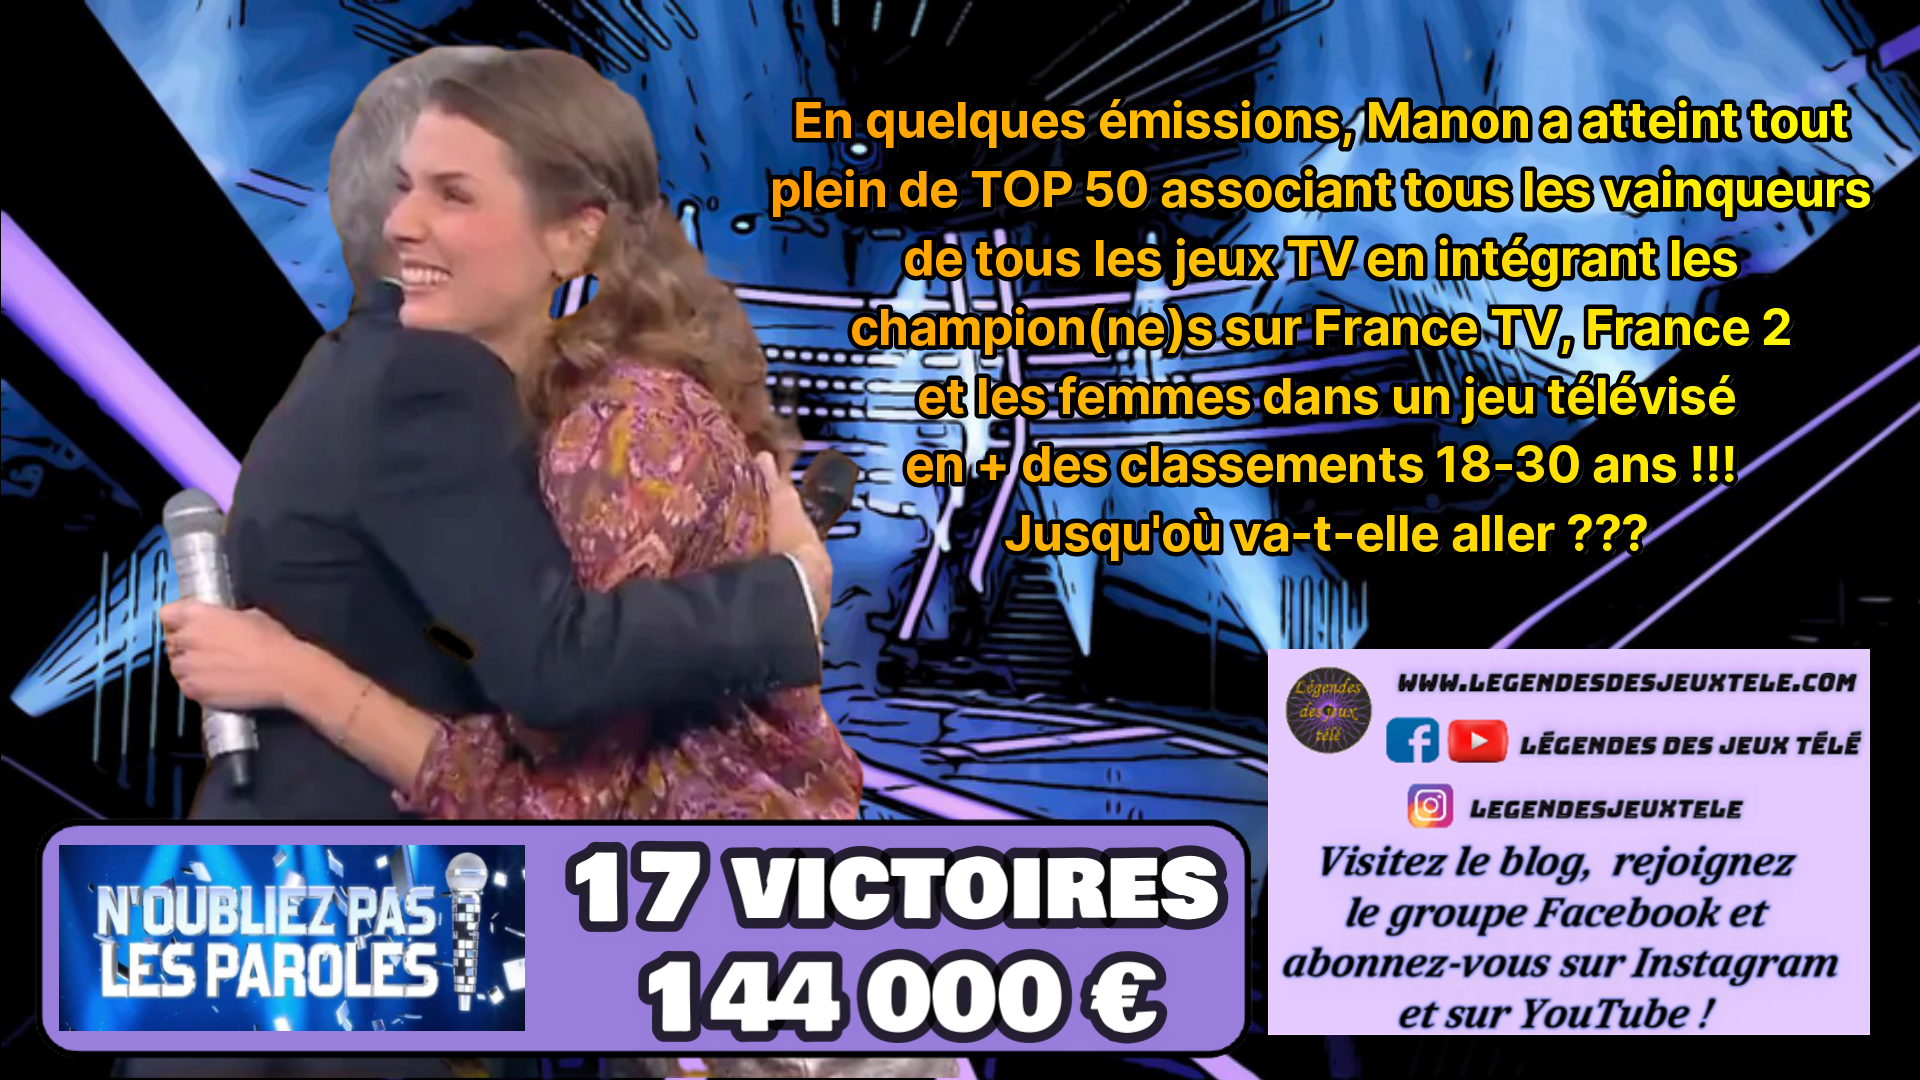 Avec 144 000 € et 17 victoires, Manon poursuit sa progression, bat un record absolu et atteint tout plein de nouveaux classements originaux !!!